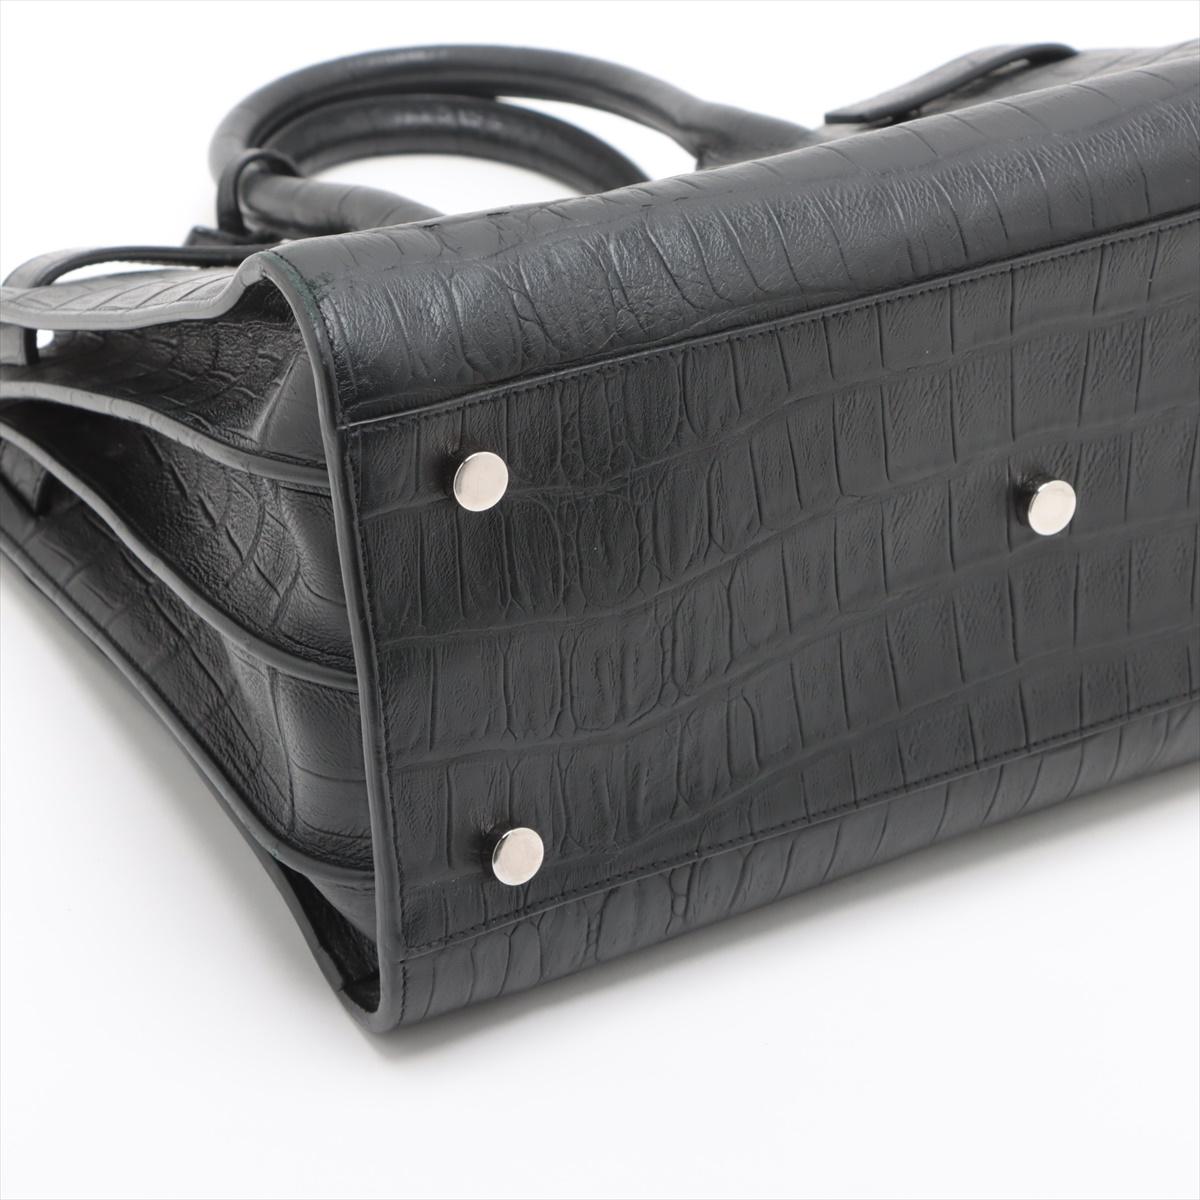 Saint Laurent Paris Sac de Jour Crocodile Embossed Leather Two-Way Handbag Black 1